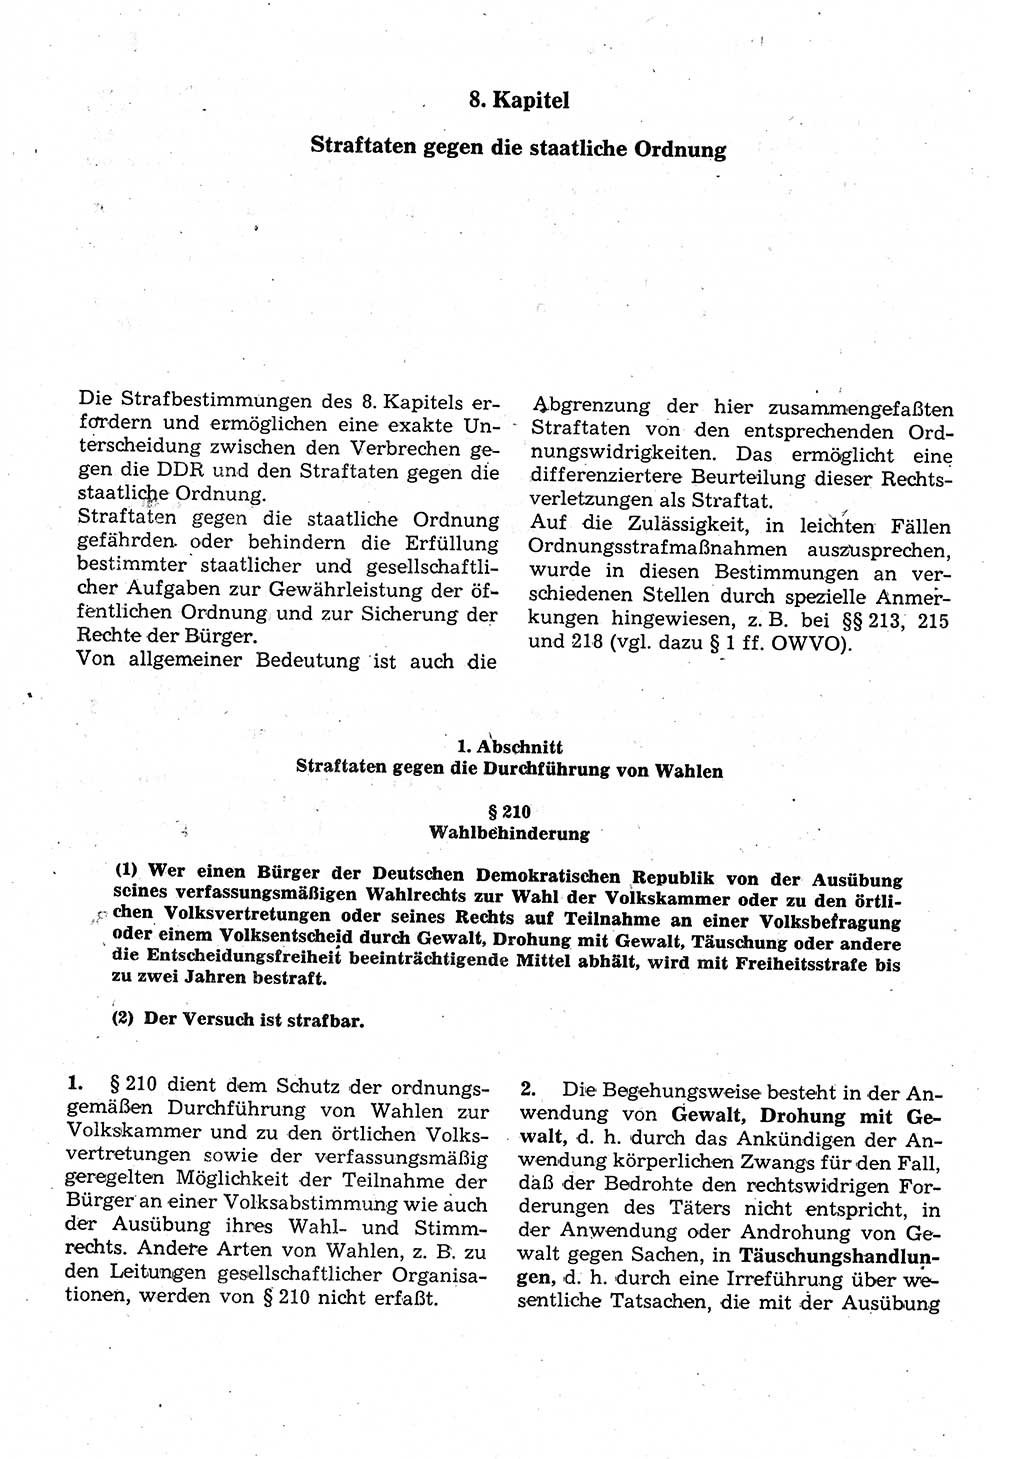 Strafrecht der Deutschen Demokratischen Republik (DDR), Kommentar zum Strafgesetzbuch (StGB) 1987, Seite 466 (Strafr. DDR Komm. StGB 1987, S. 466)